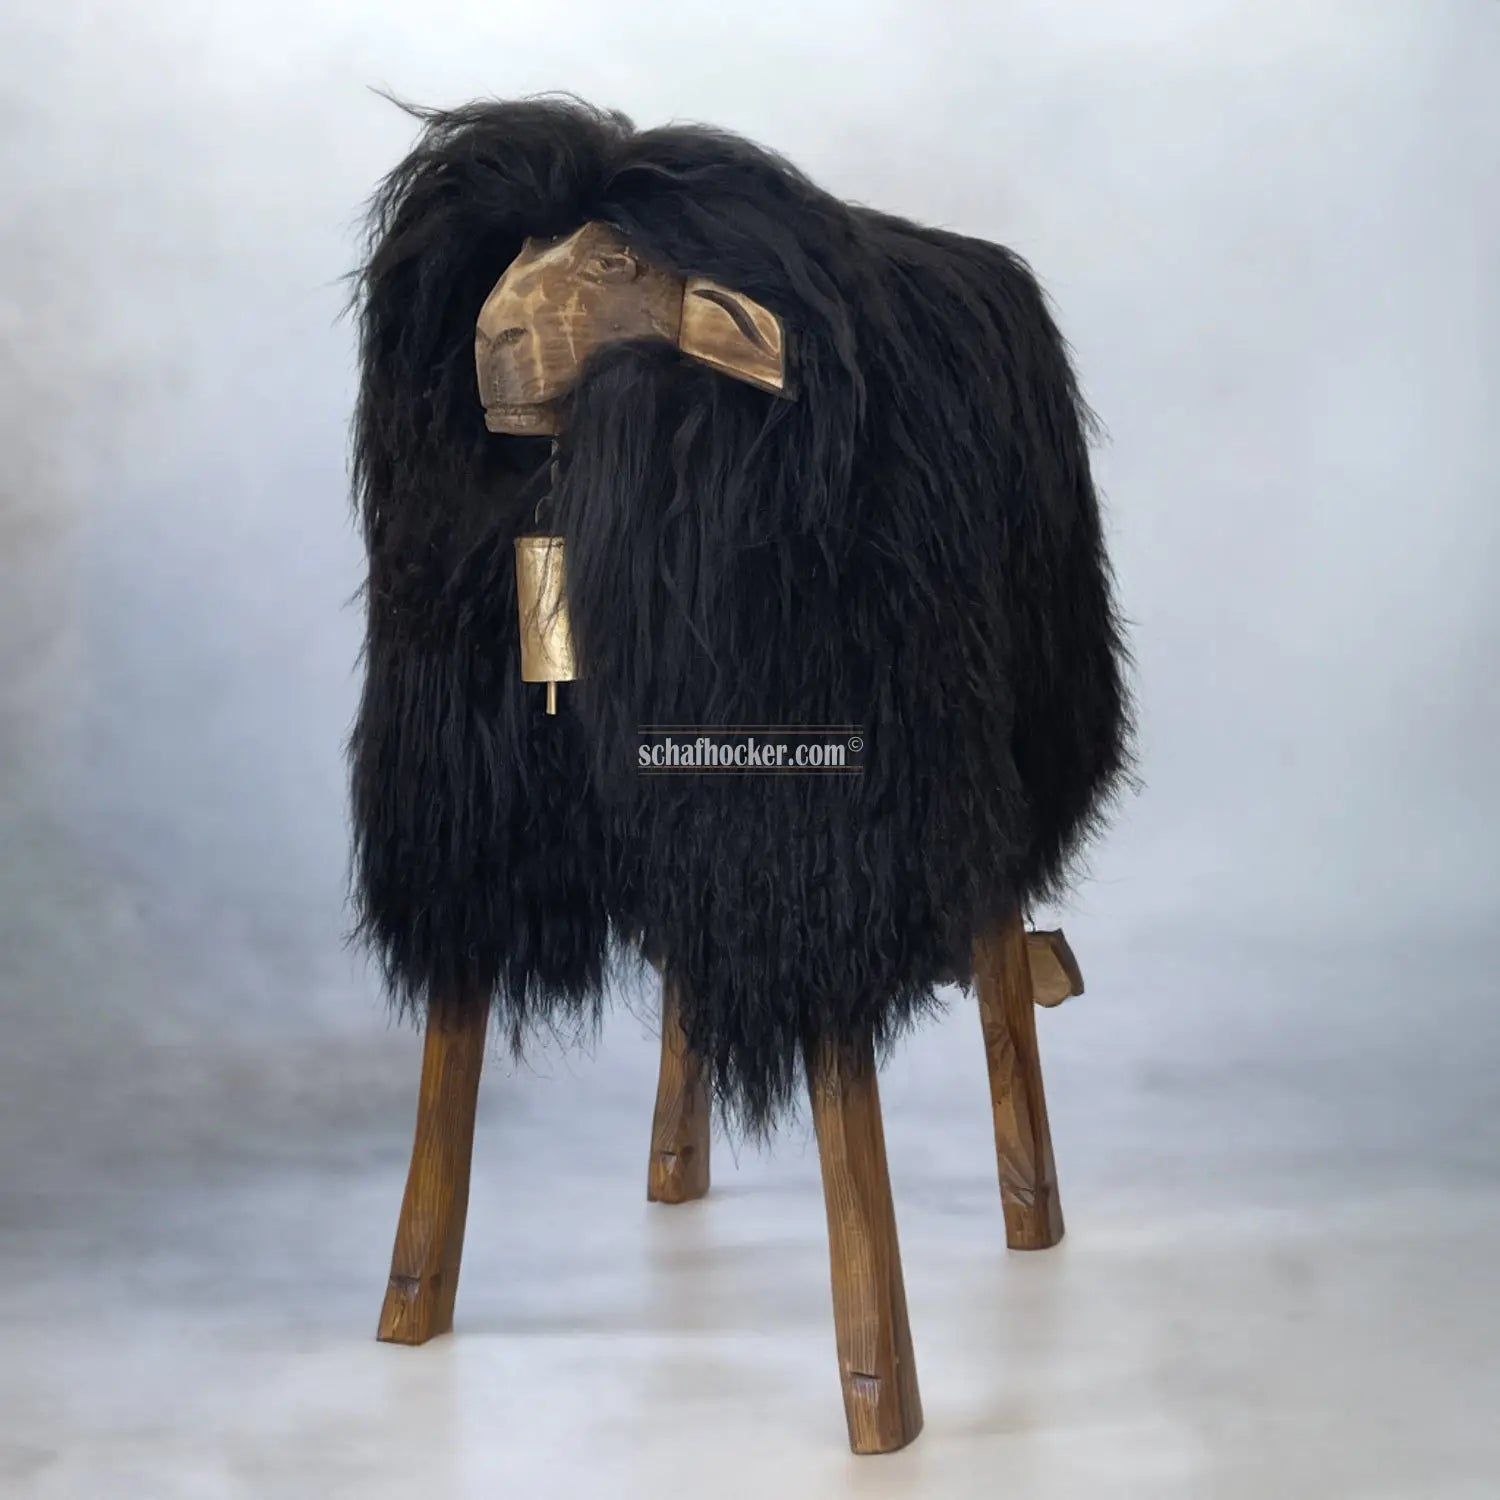 Barhocker ’Locki das wilde Madl’ schwarz Designer Schaf